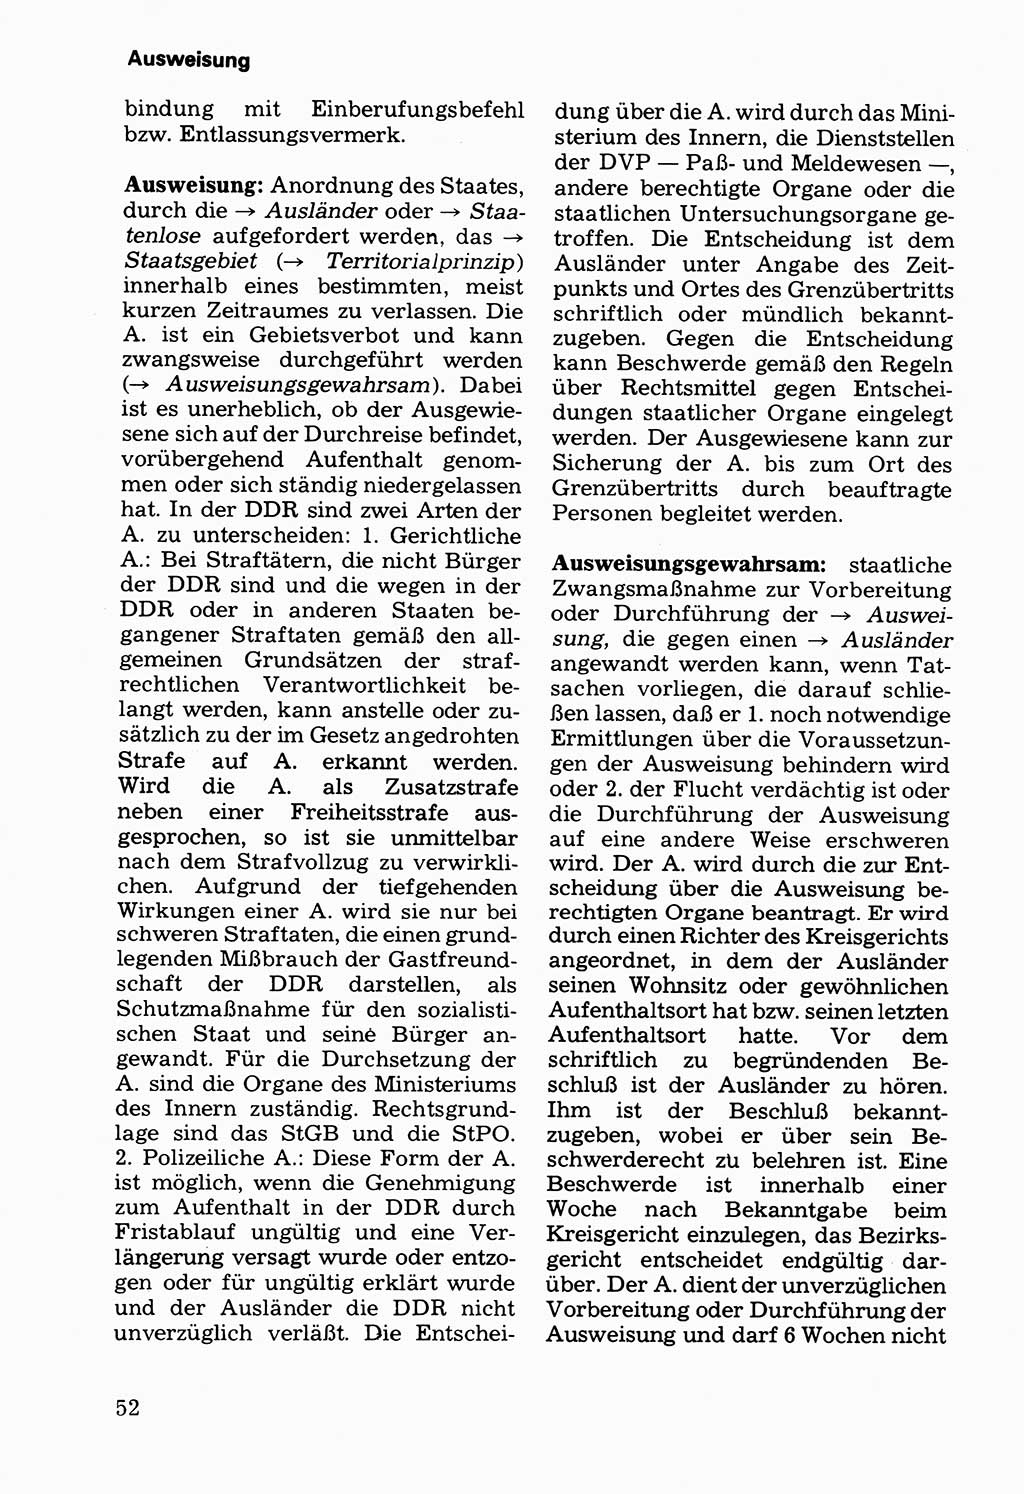 Wörterbuch der sozialistischen Kriminalistik [Deutsche Demokratische Republik (DDR)] 1981, Seite 52 (Wb. soz. Krim. DDR 1981, S. 52)